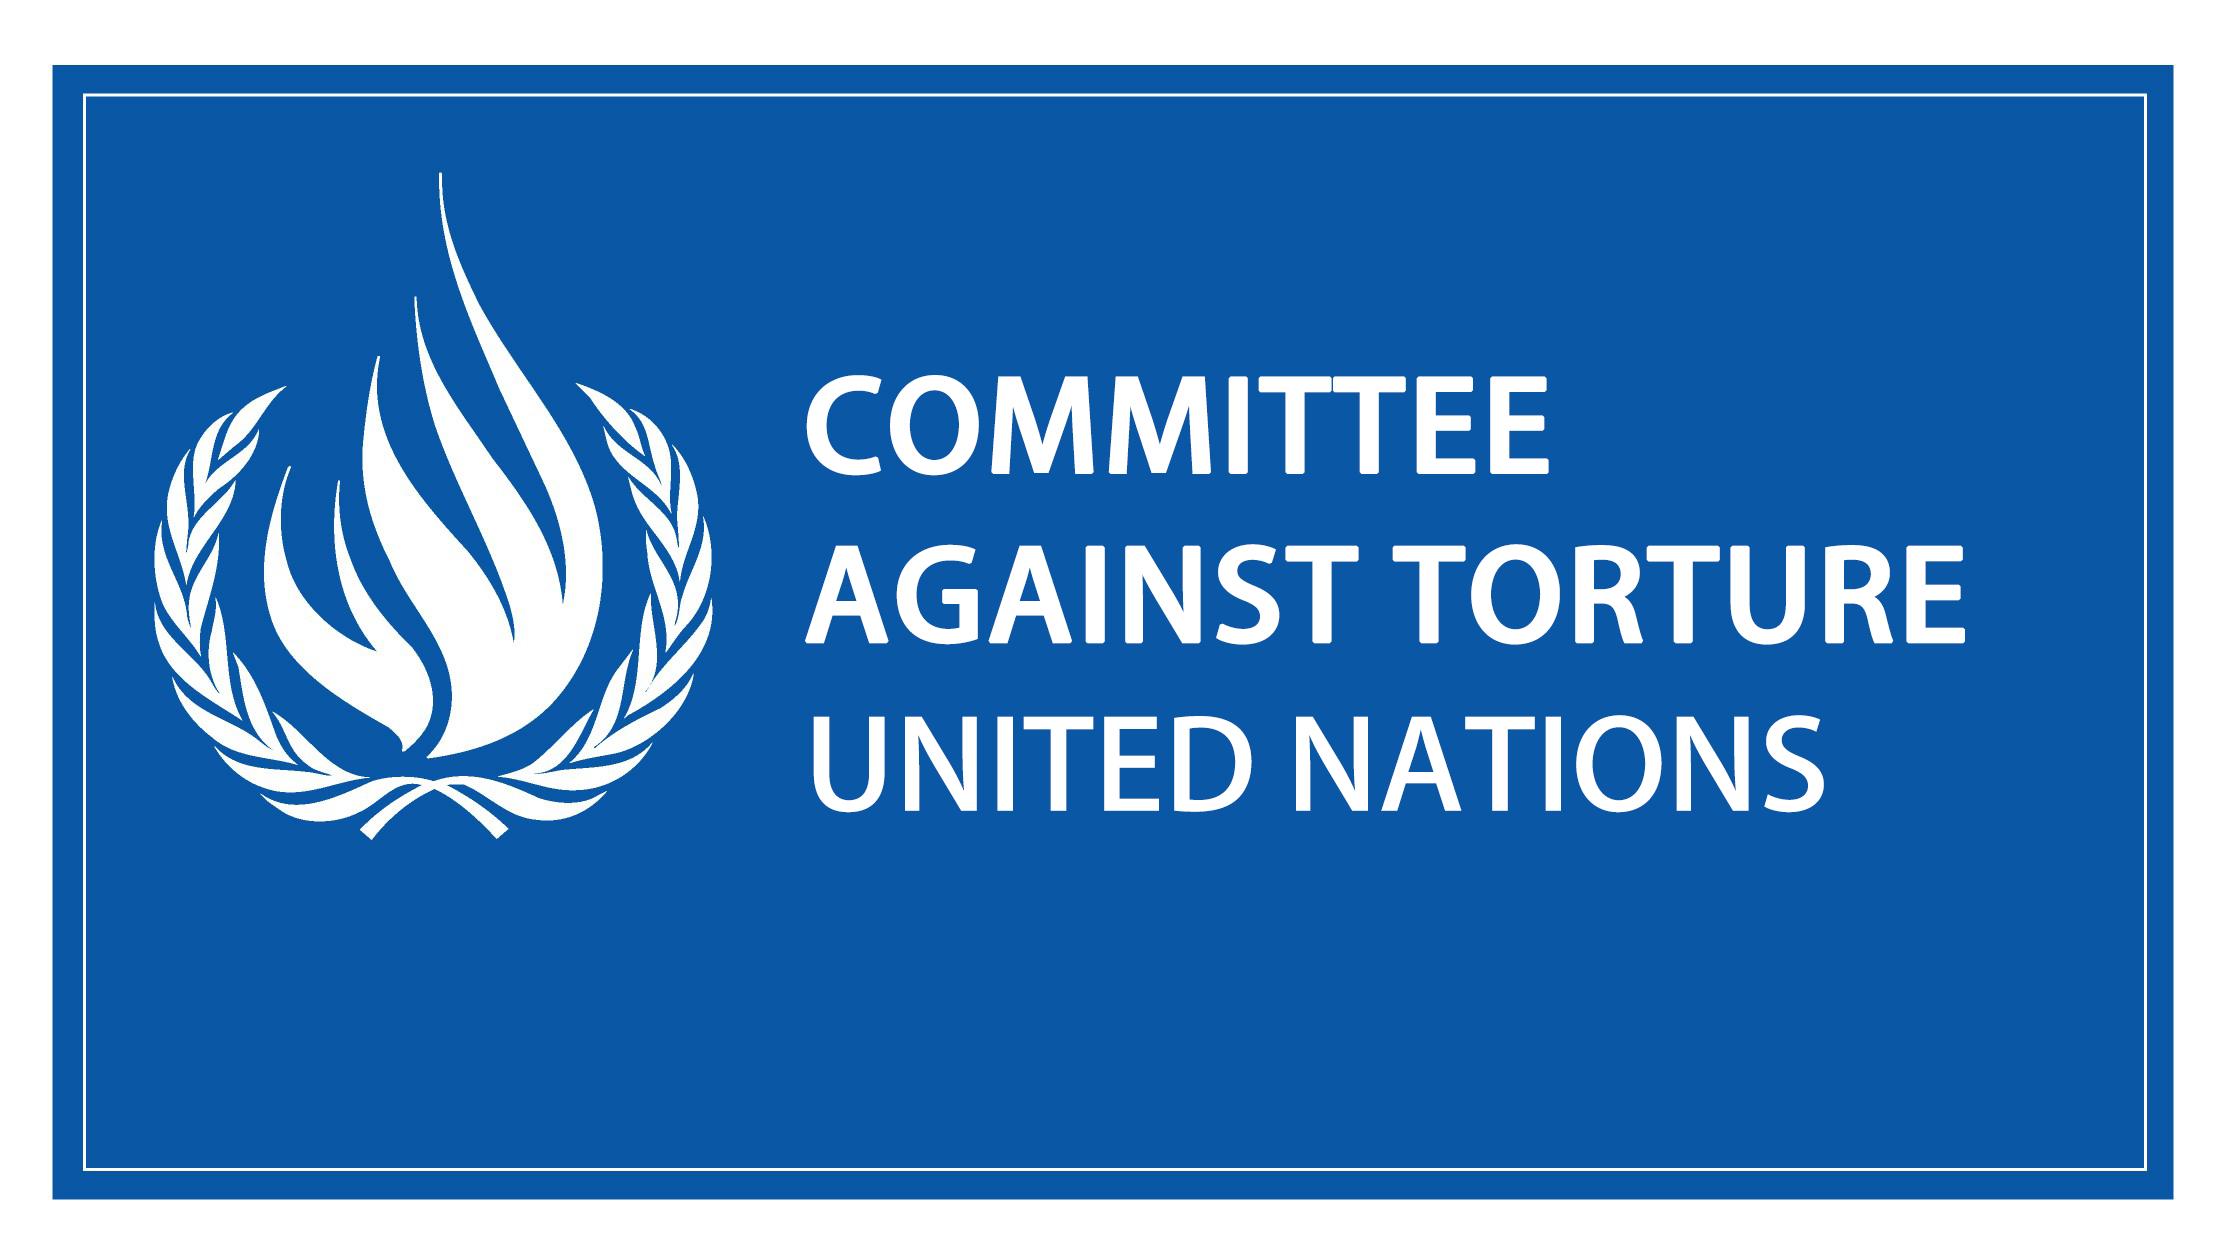 ՔՀԿ-ները զեկույց են ներկայացրել ՄԱԿ-ի Խոշտանգումների դեմ կոմիտեին՝ Ադրբեջանի 5-րդ դիտարկմանն ընդառաջ